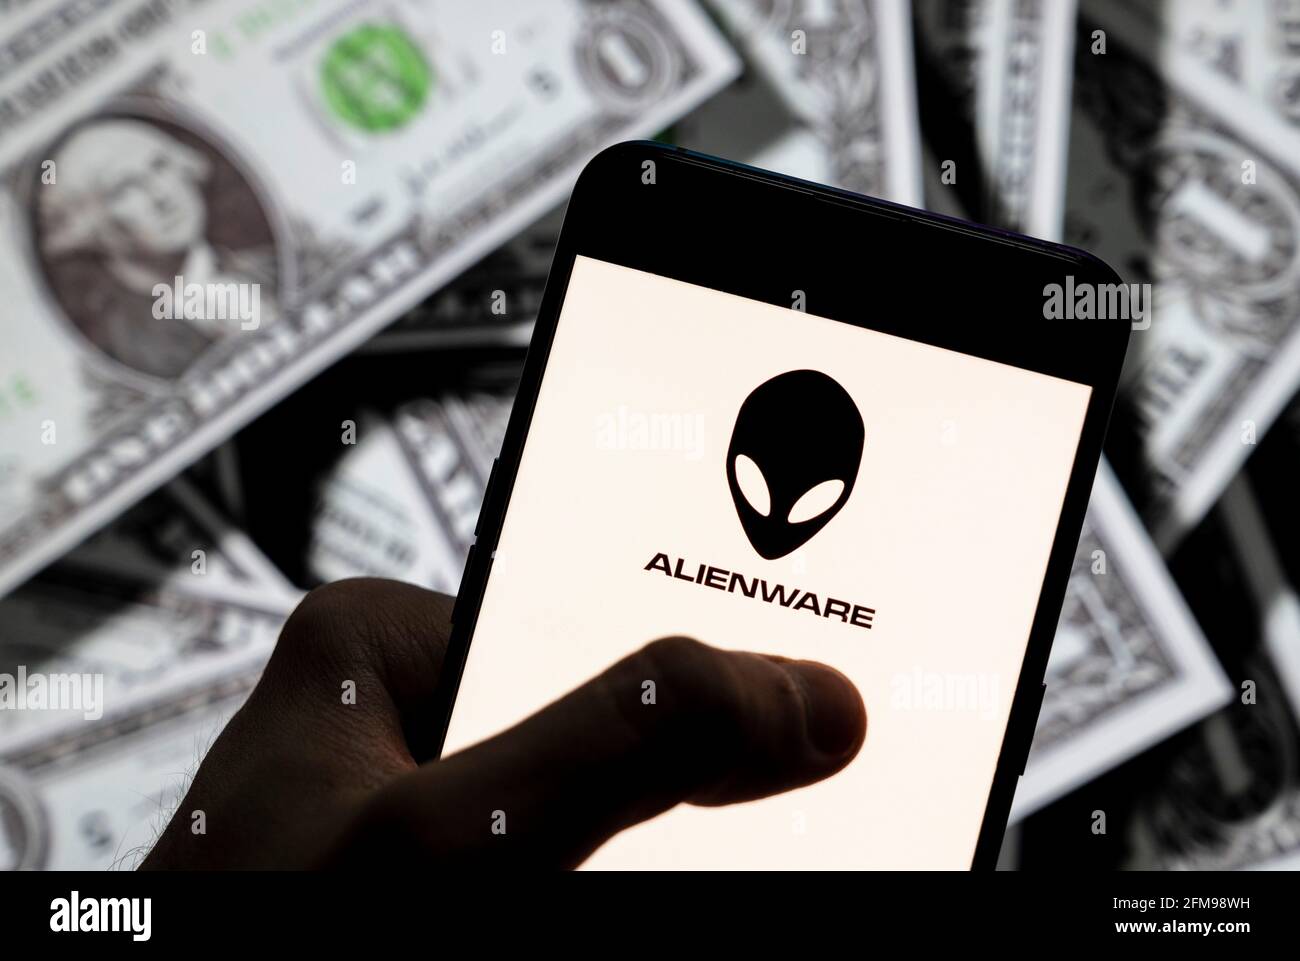 Dans cette illustration, le logo Alienware de la filiale américaine de Dell, visible sur un smartphone avec une devise en USD (dollar américain) en arrière-plan. Banque D'Images